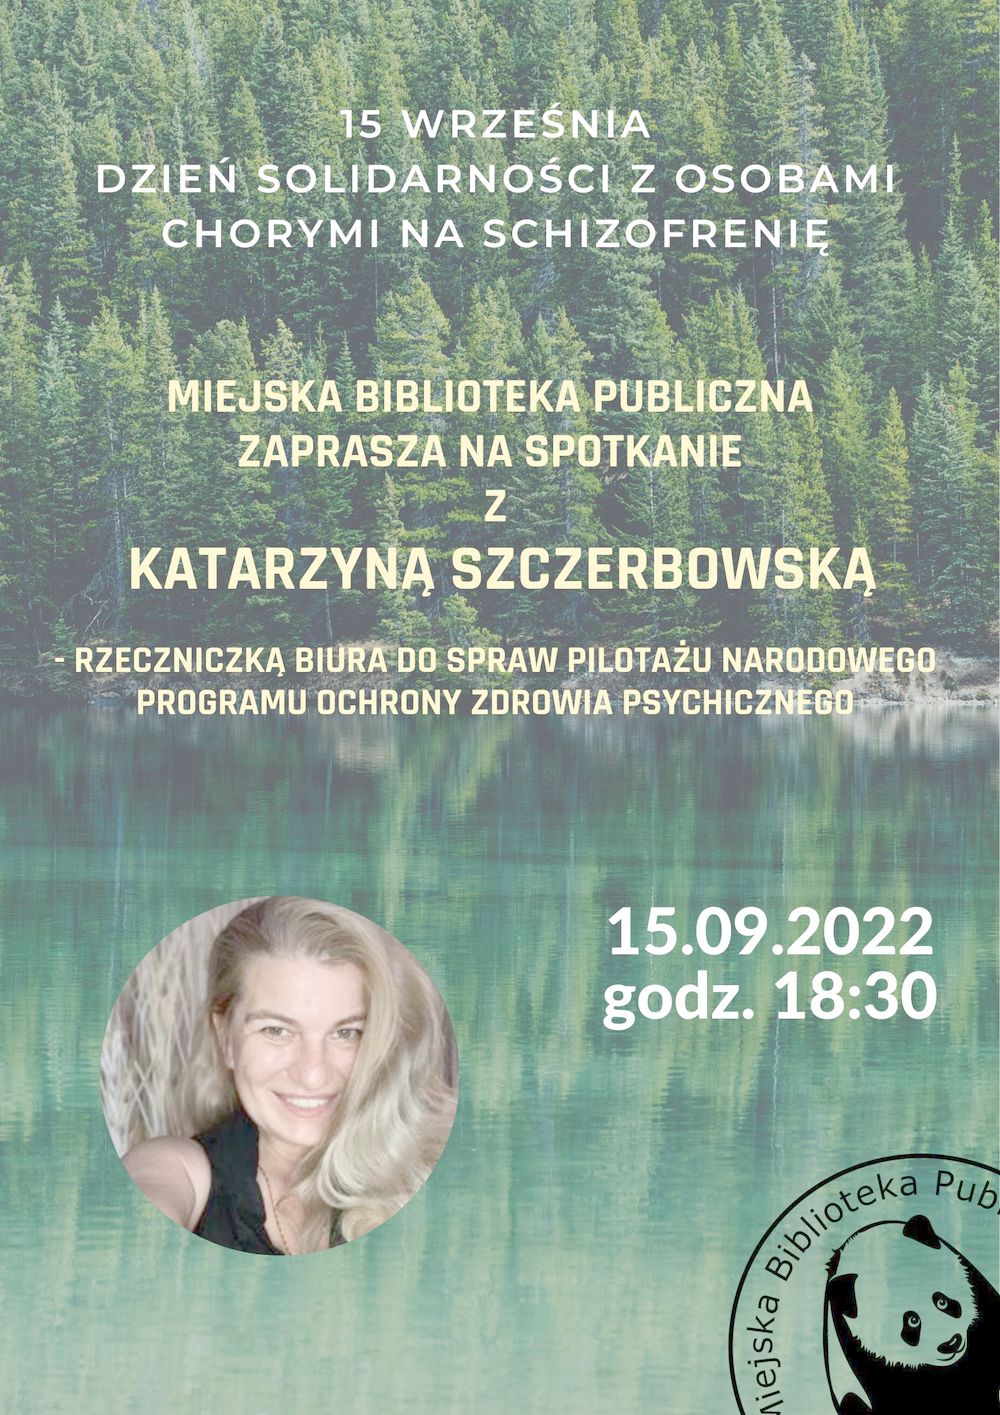 Spotkanie z Katarzyną Szczerbowską - prelekcja o schizofrenii